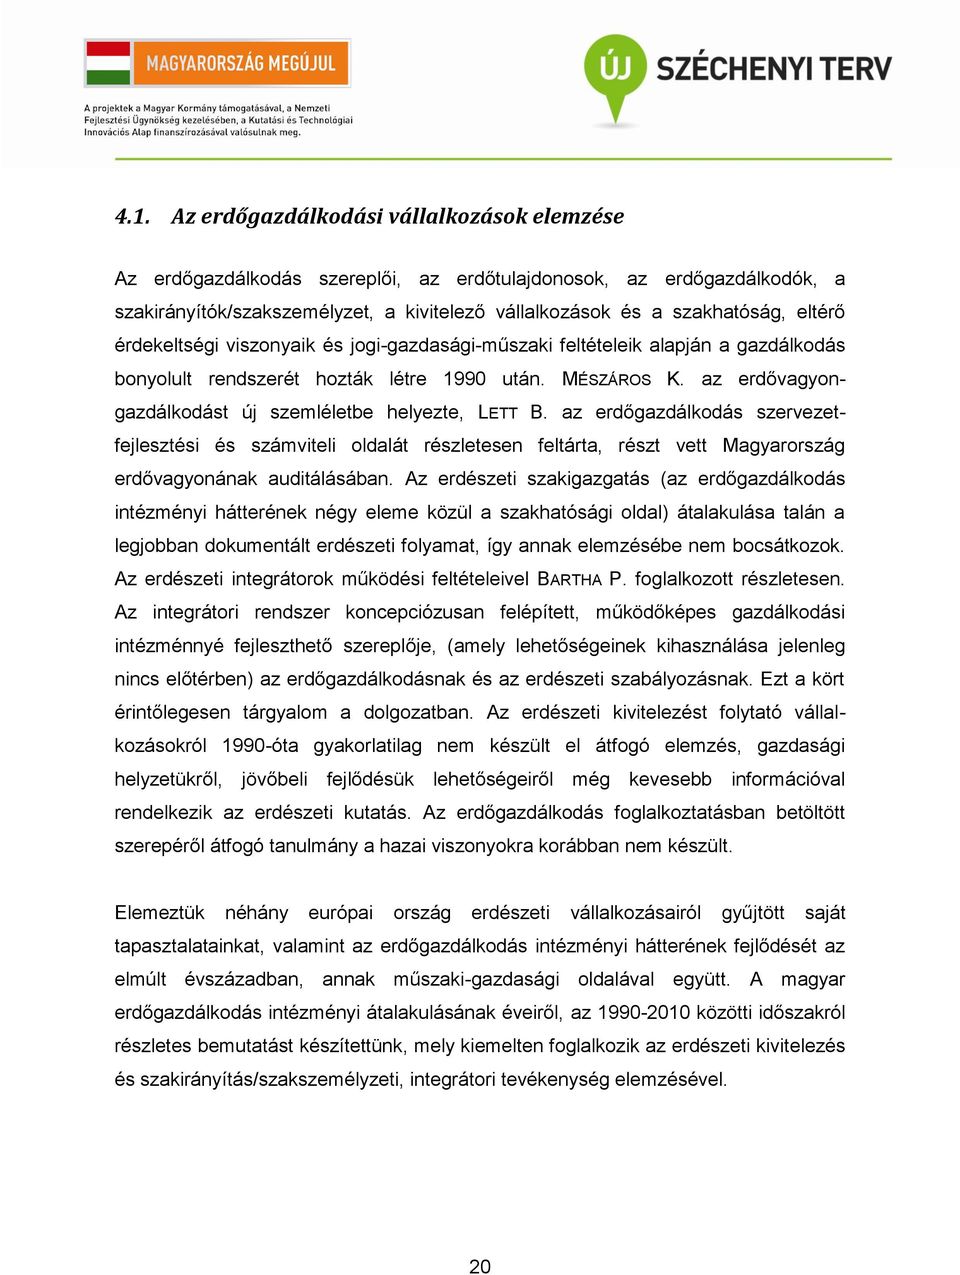 az erdővagyongazdálkodást új szemléletbe helyezte, LETT B. az erdőgazdálkodás szervezetfejlesztési és számviteli oldalát részletesen feltárta, részt vett Magyarország erdővagyonának auditálásában.